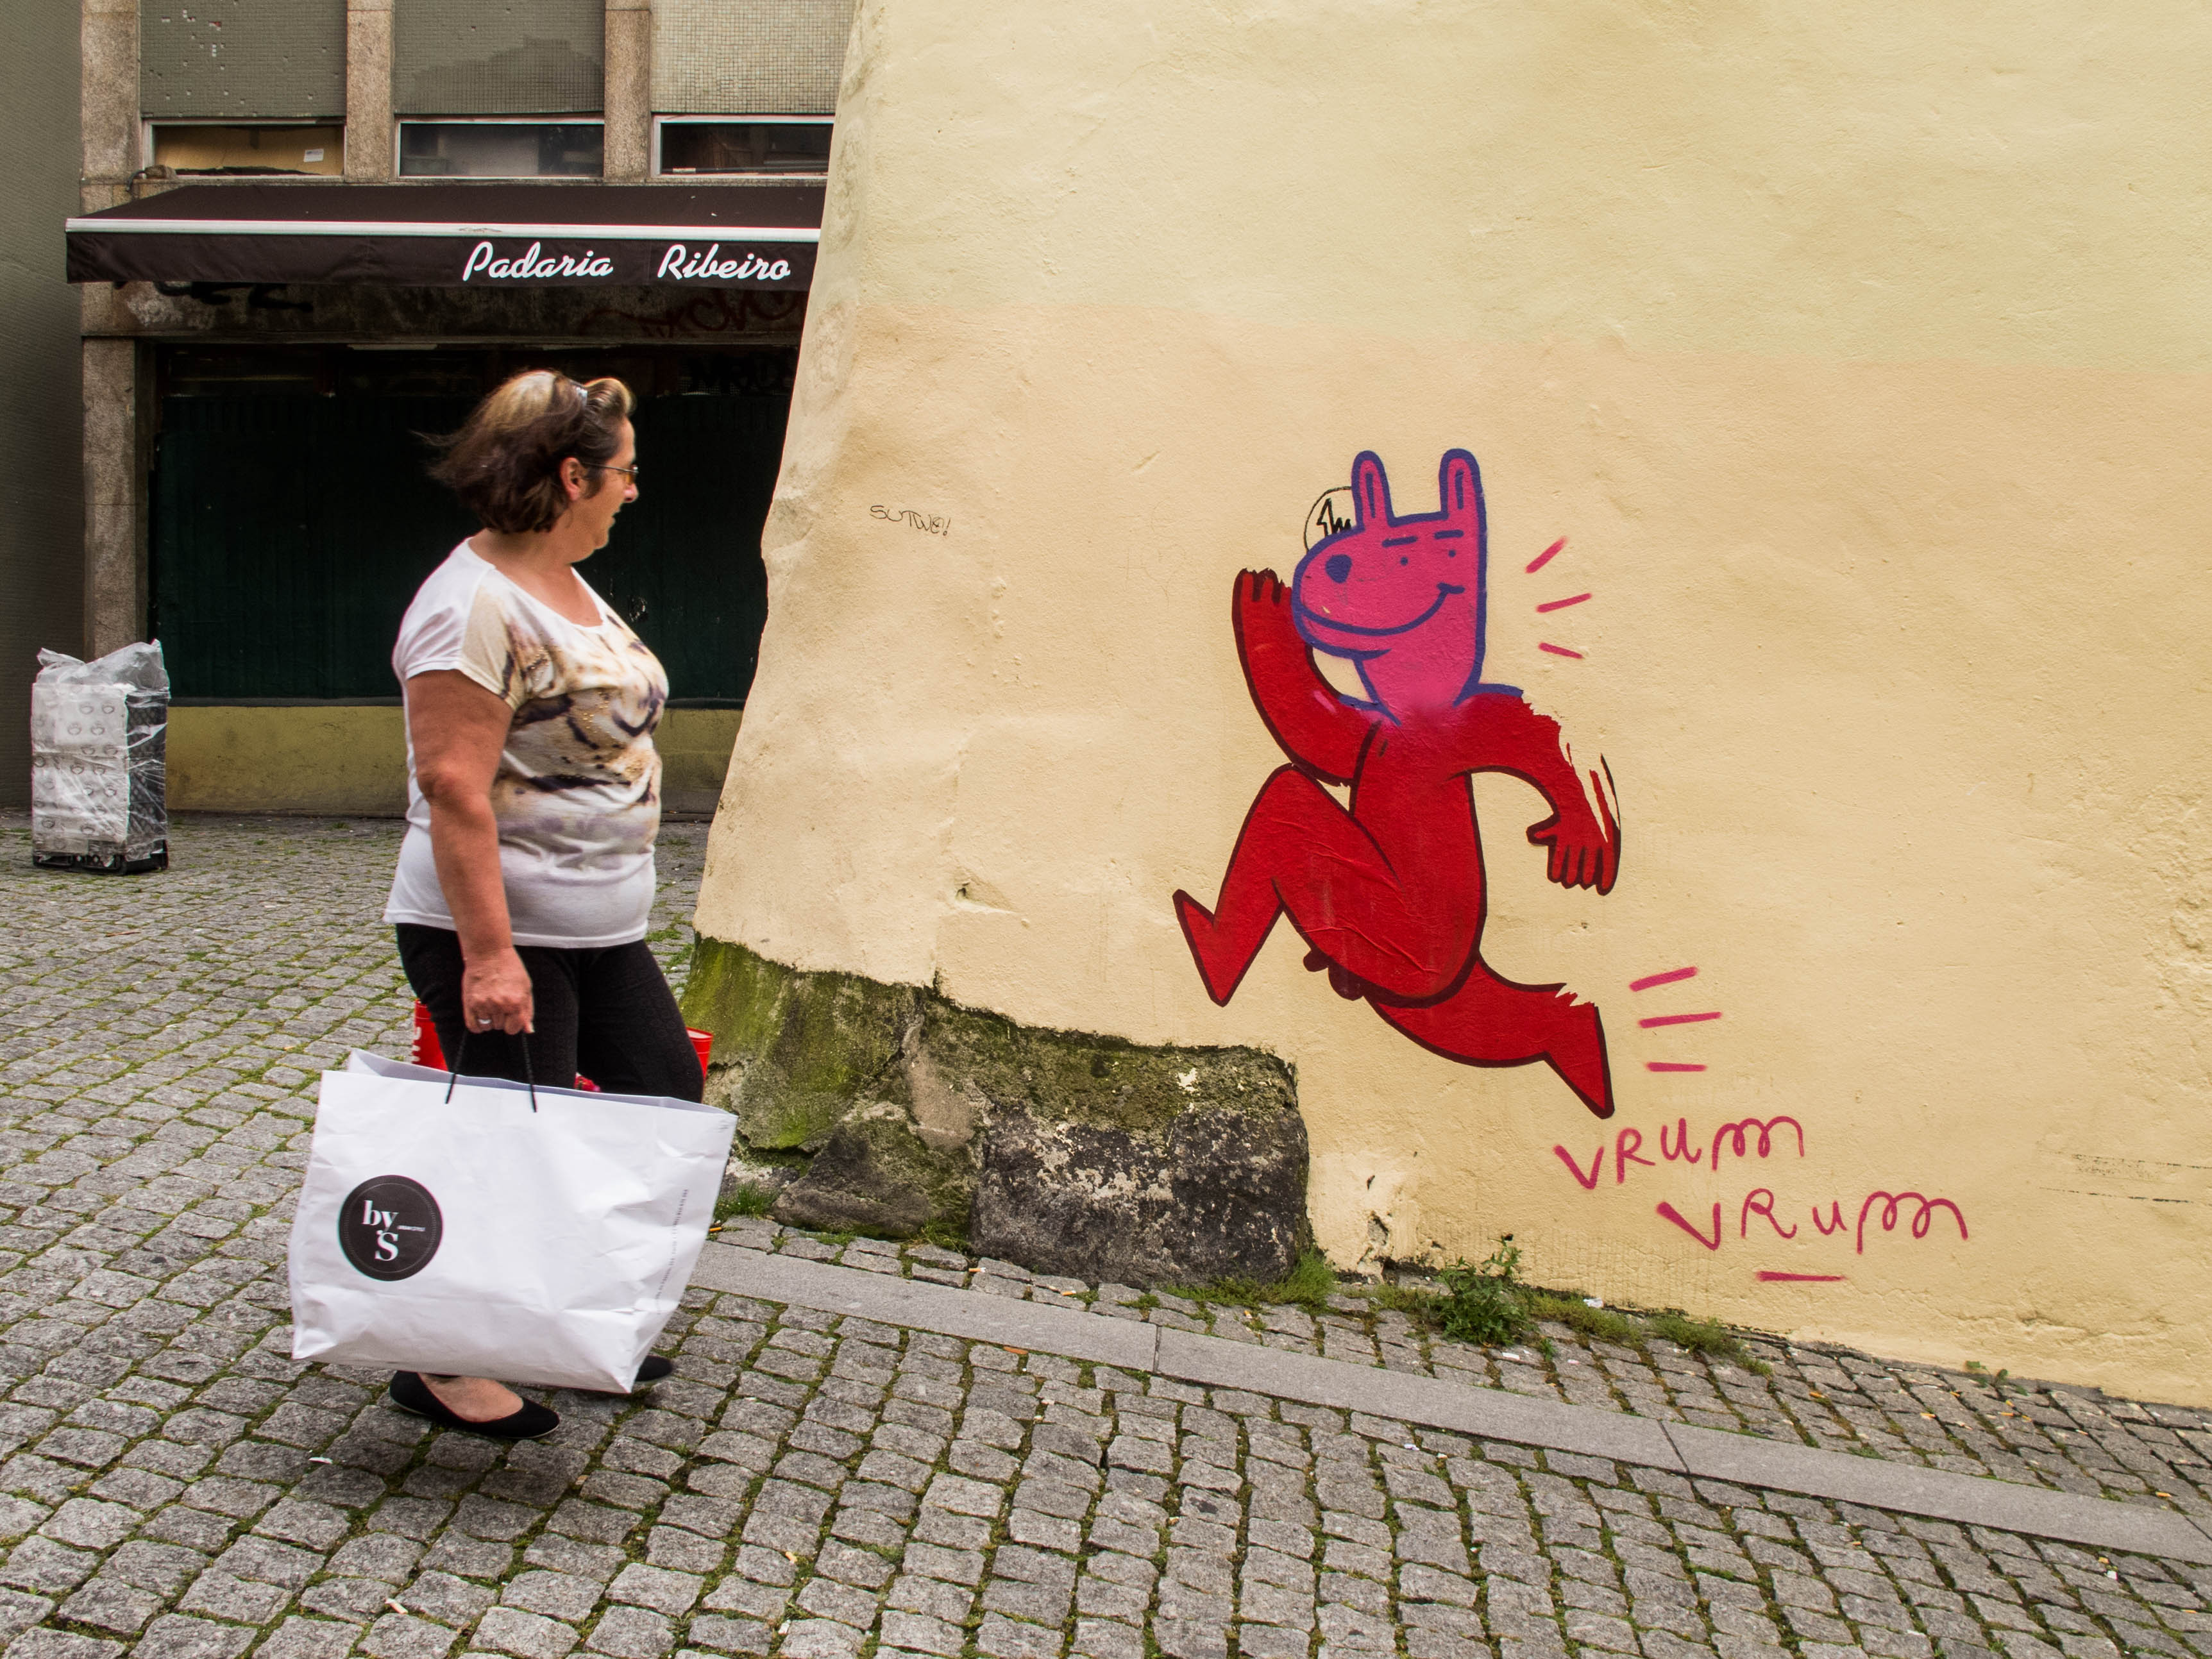 una señora sonrie delante de una jirafa roja en una calle de Oporto